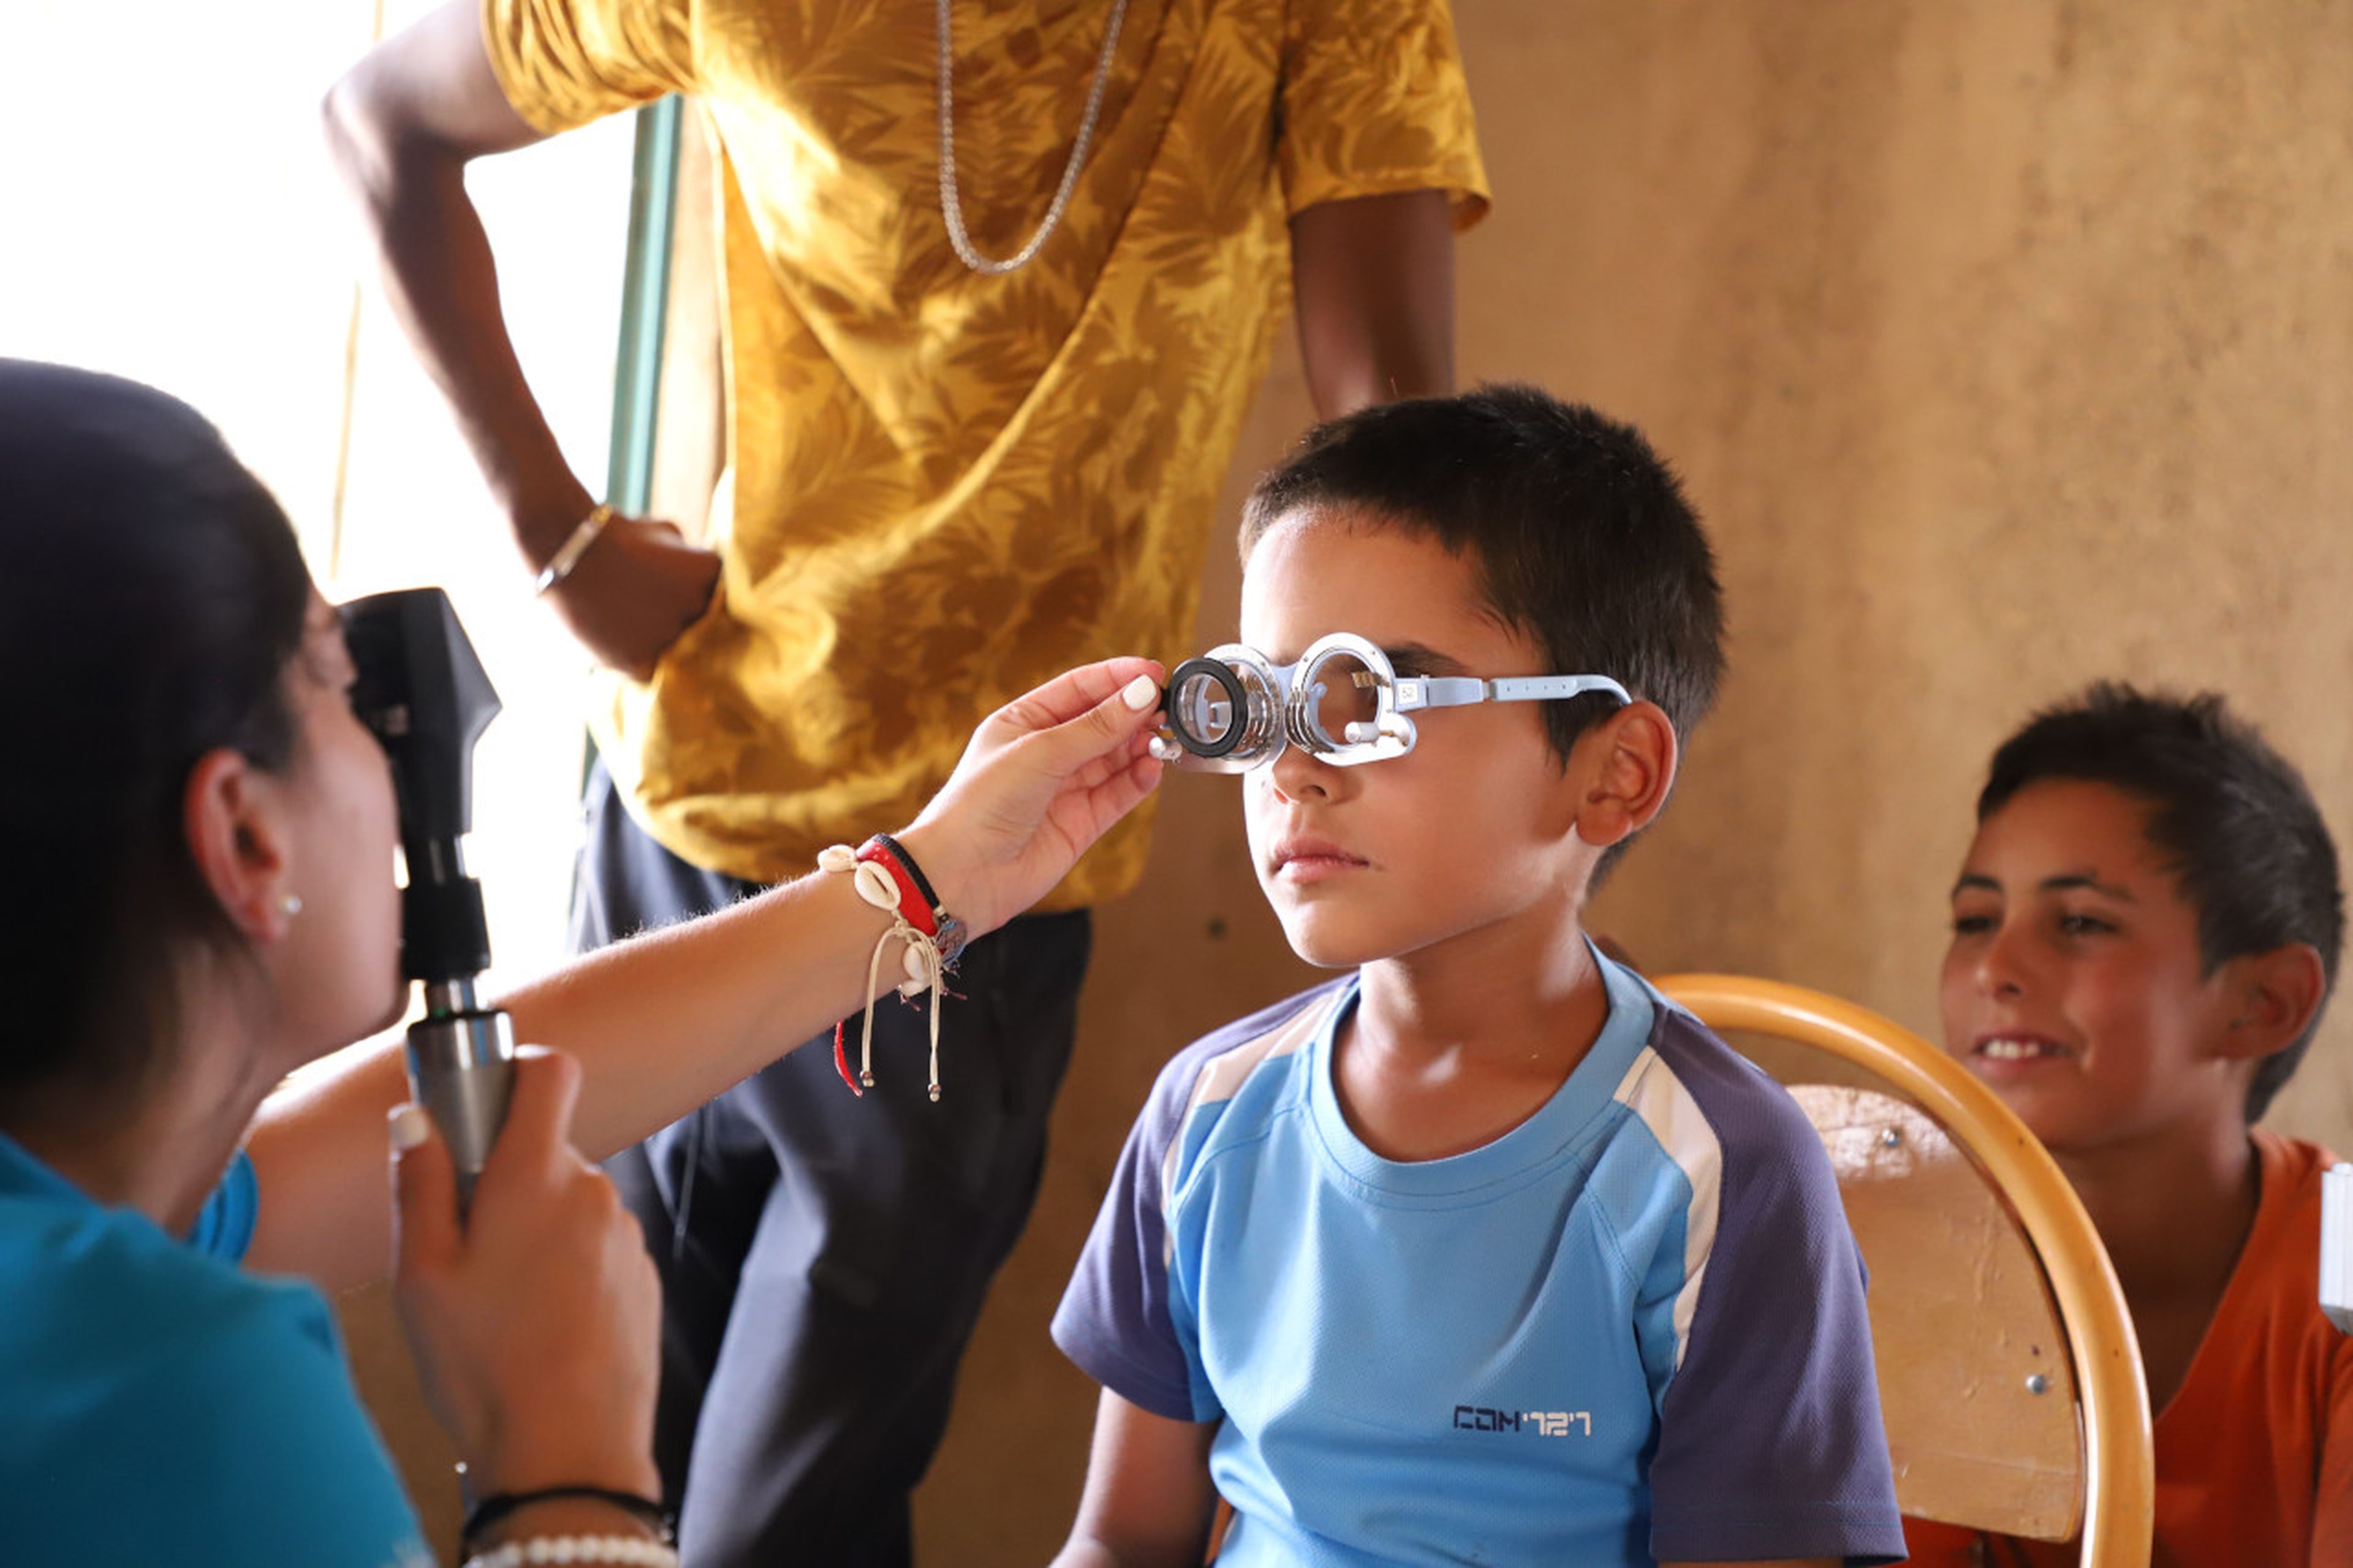 Una óptica de la Fundación Alain Afflelou graduando la vista a un menor marroquí